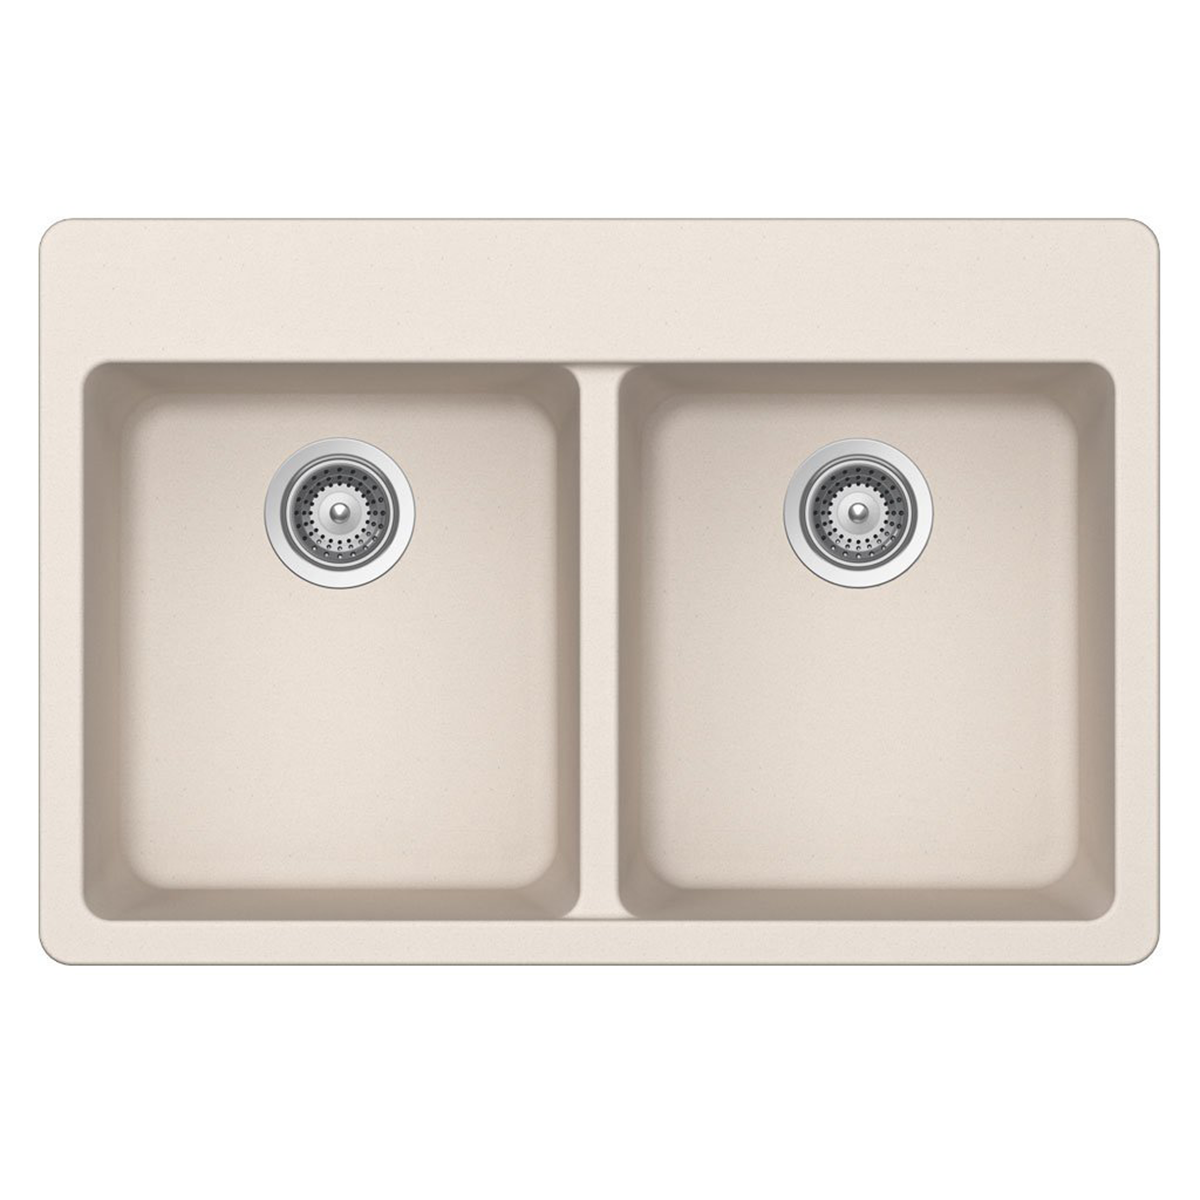 Pelican Int'l Crystallite Series PL-200 33" x 22" Sand Granite Composite Topmount/ Undermount Kitchen Sink